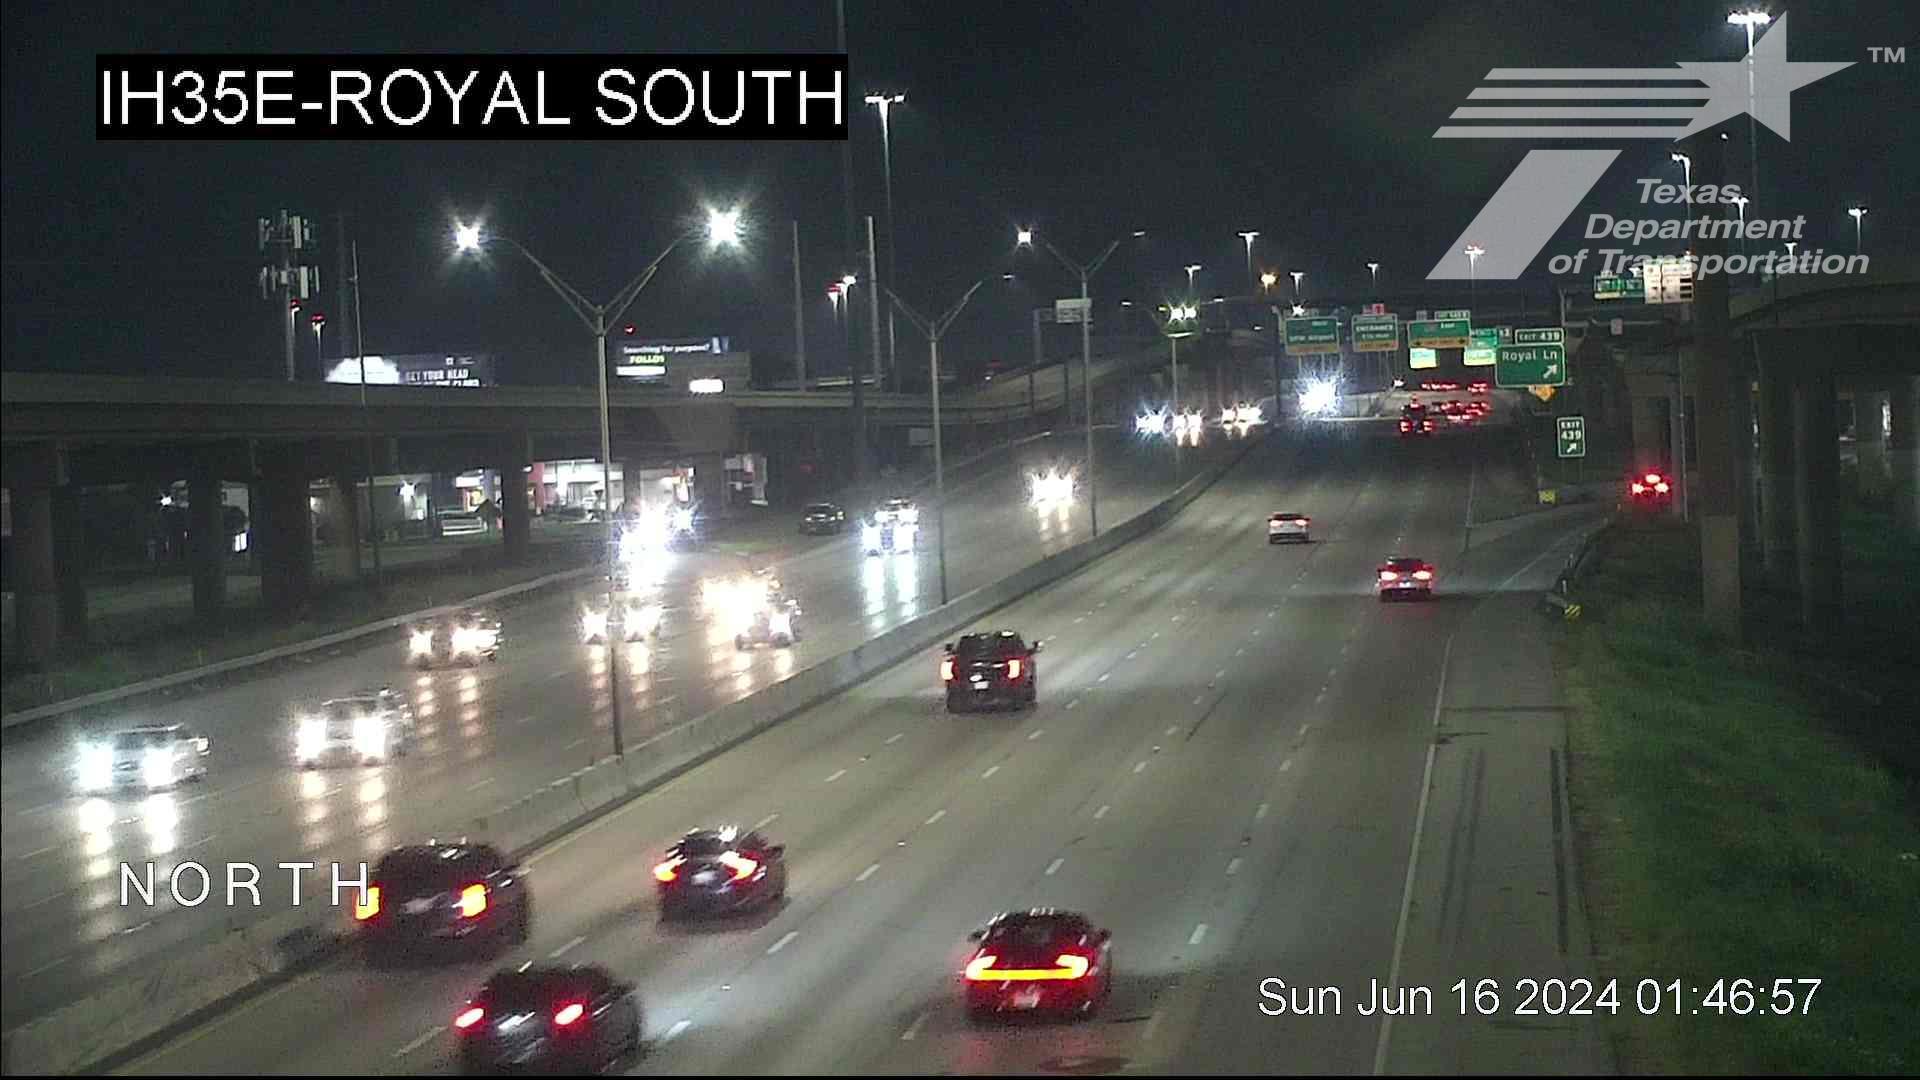 Dallas › North: I-35E @ Royal South Traffic Camera